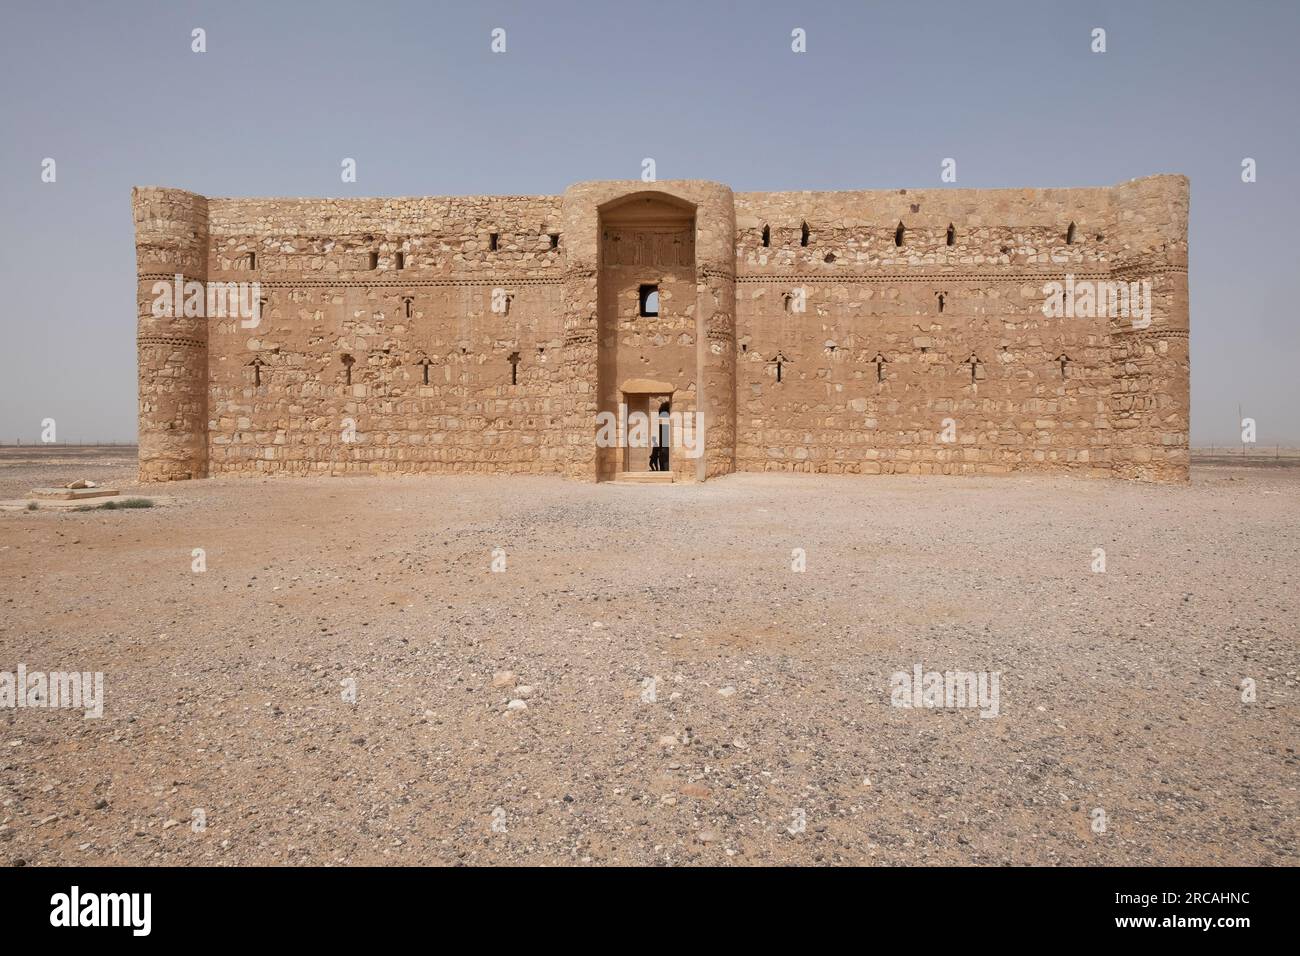 Qasr Amra, est un château du désert dans l'est actuel de la Jordanie. Aussi connu sous le nom Quseir Amra ou Qusayr Amra. Jordanie Banque D'Images